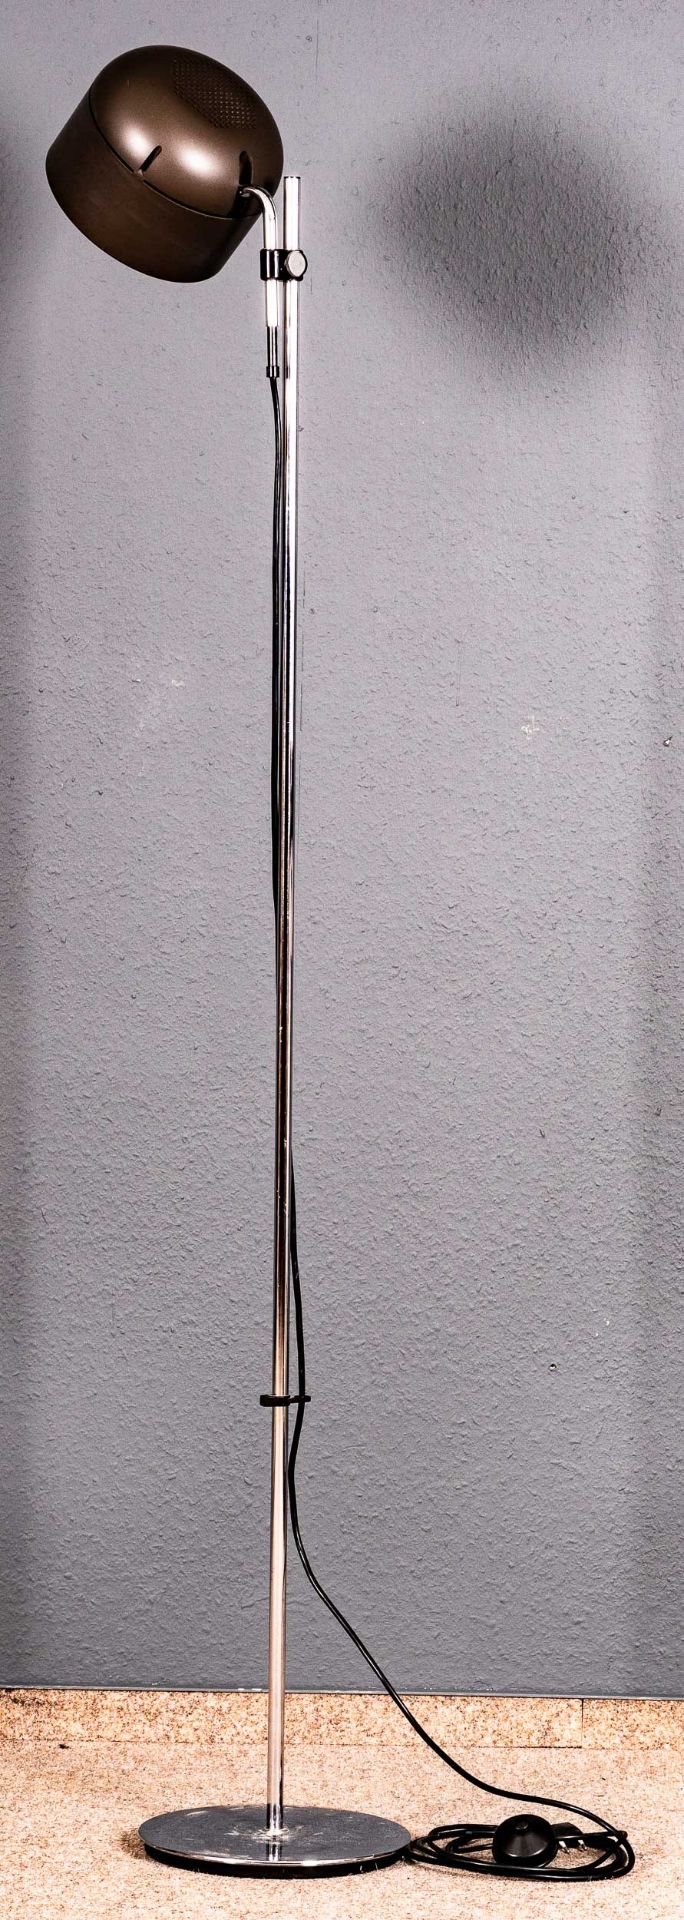 Höhenverstellbare einflammige Stehlampe, verchromtes Gestänge mit verstellbarer Lampenfassung, Fußs - Bild 3 aus 8